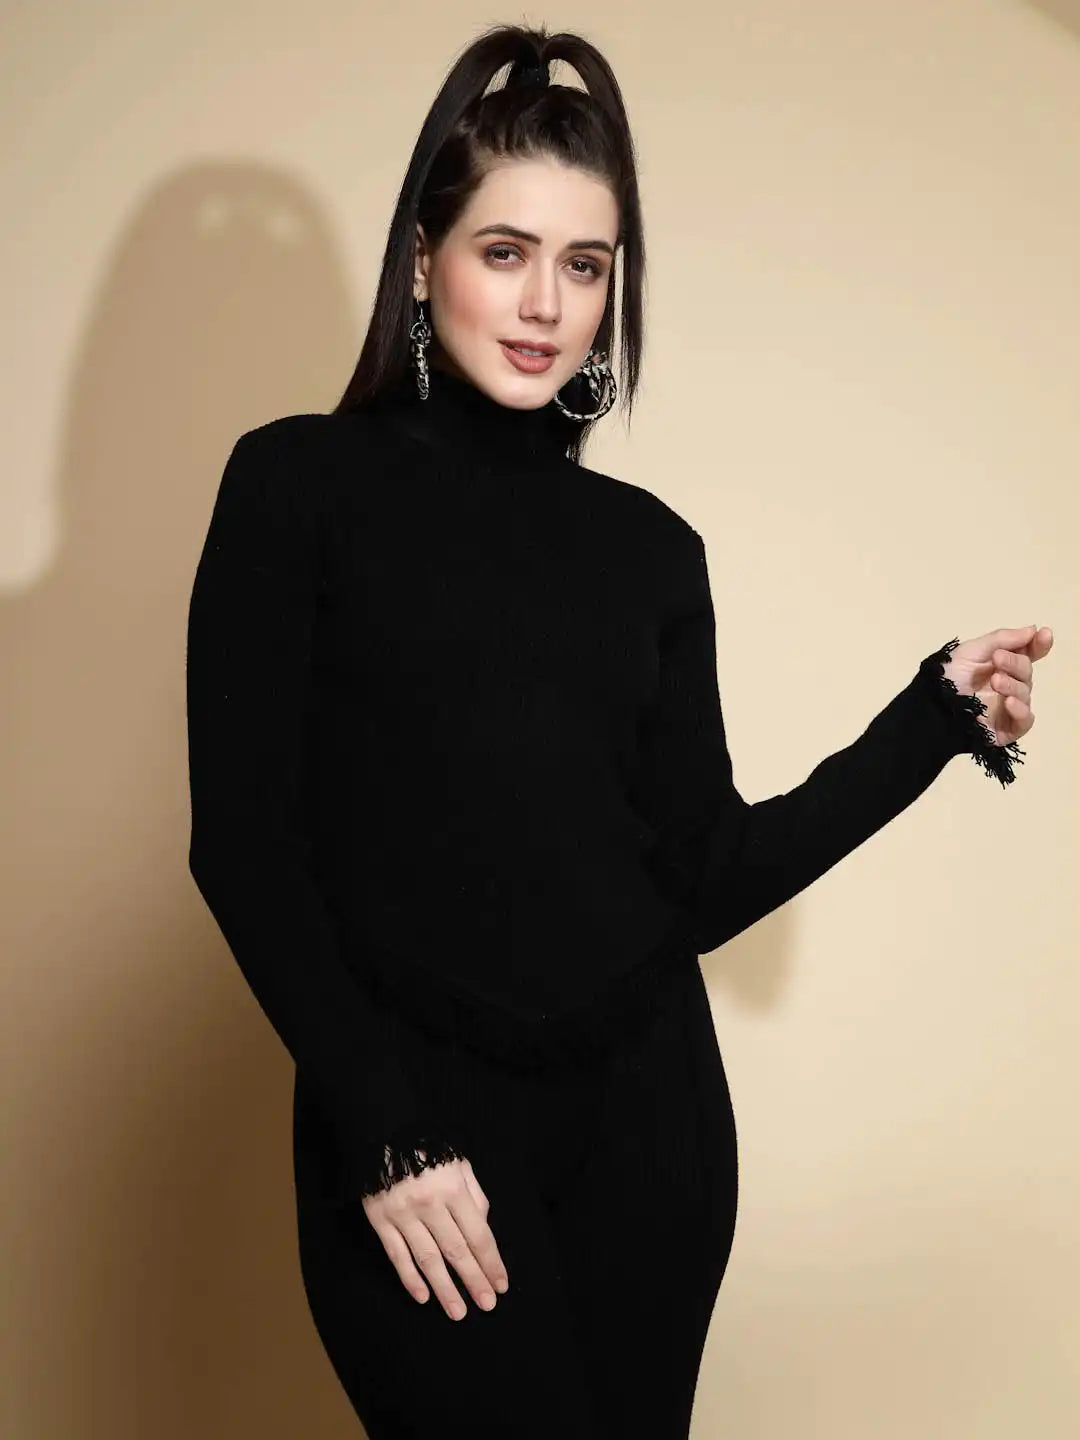 Black Pullover for Women